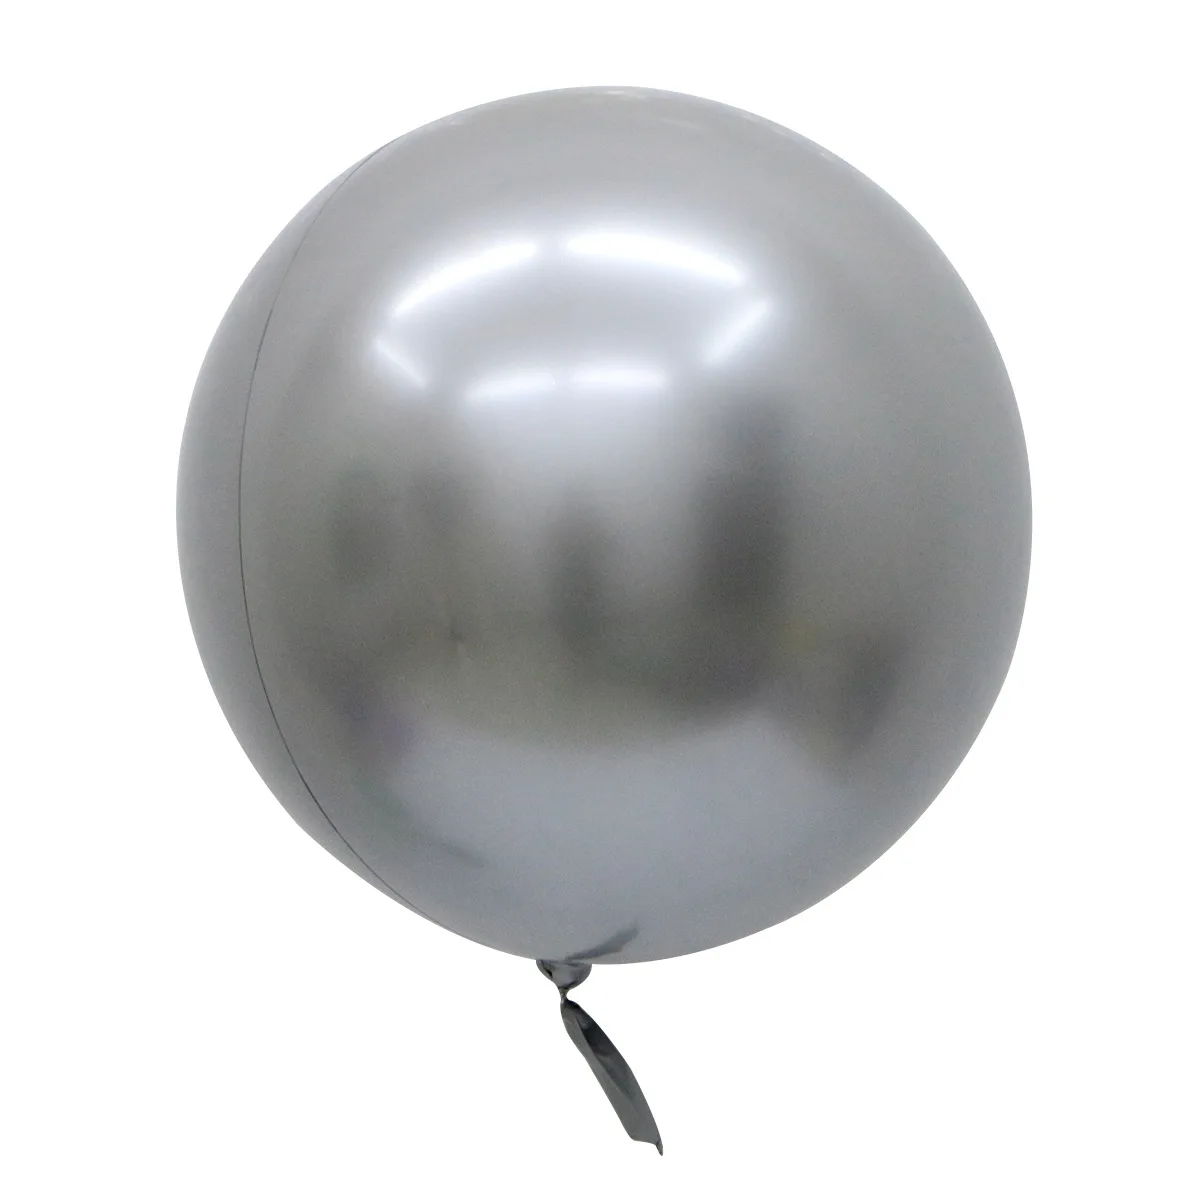 Шар хром серебро. Шар хром серебро 60 см. Шар Bubble 90 см. Шар металлический хромированный сфера 3д воздушный бабле. Шары хром 46 см.